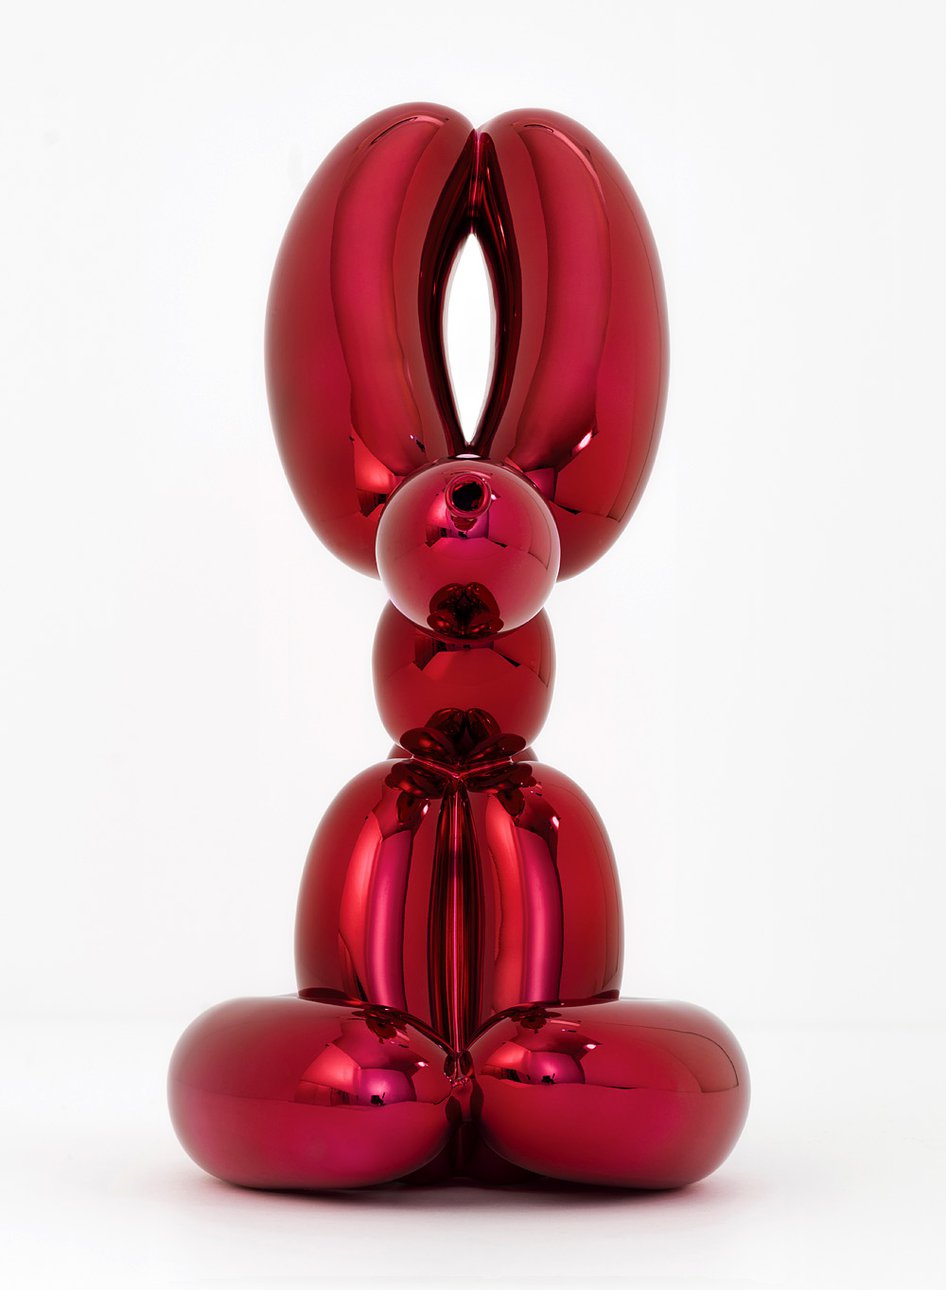 Коллекция Джеффа Кунса Balloon Animals для Bernardaud. Фото: Bernardaud / Jeff Koo